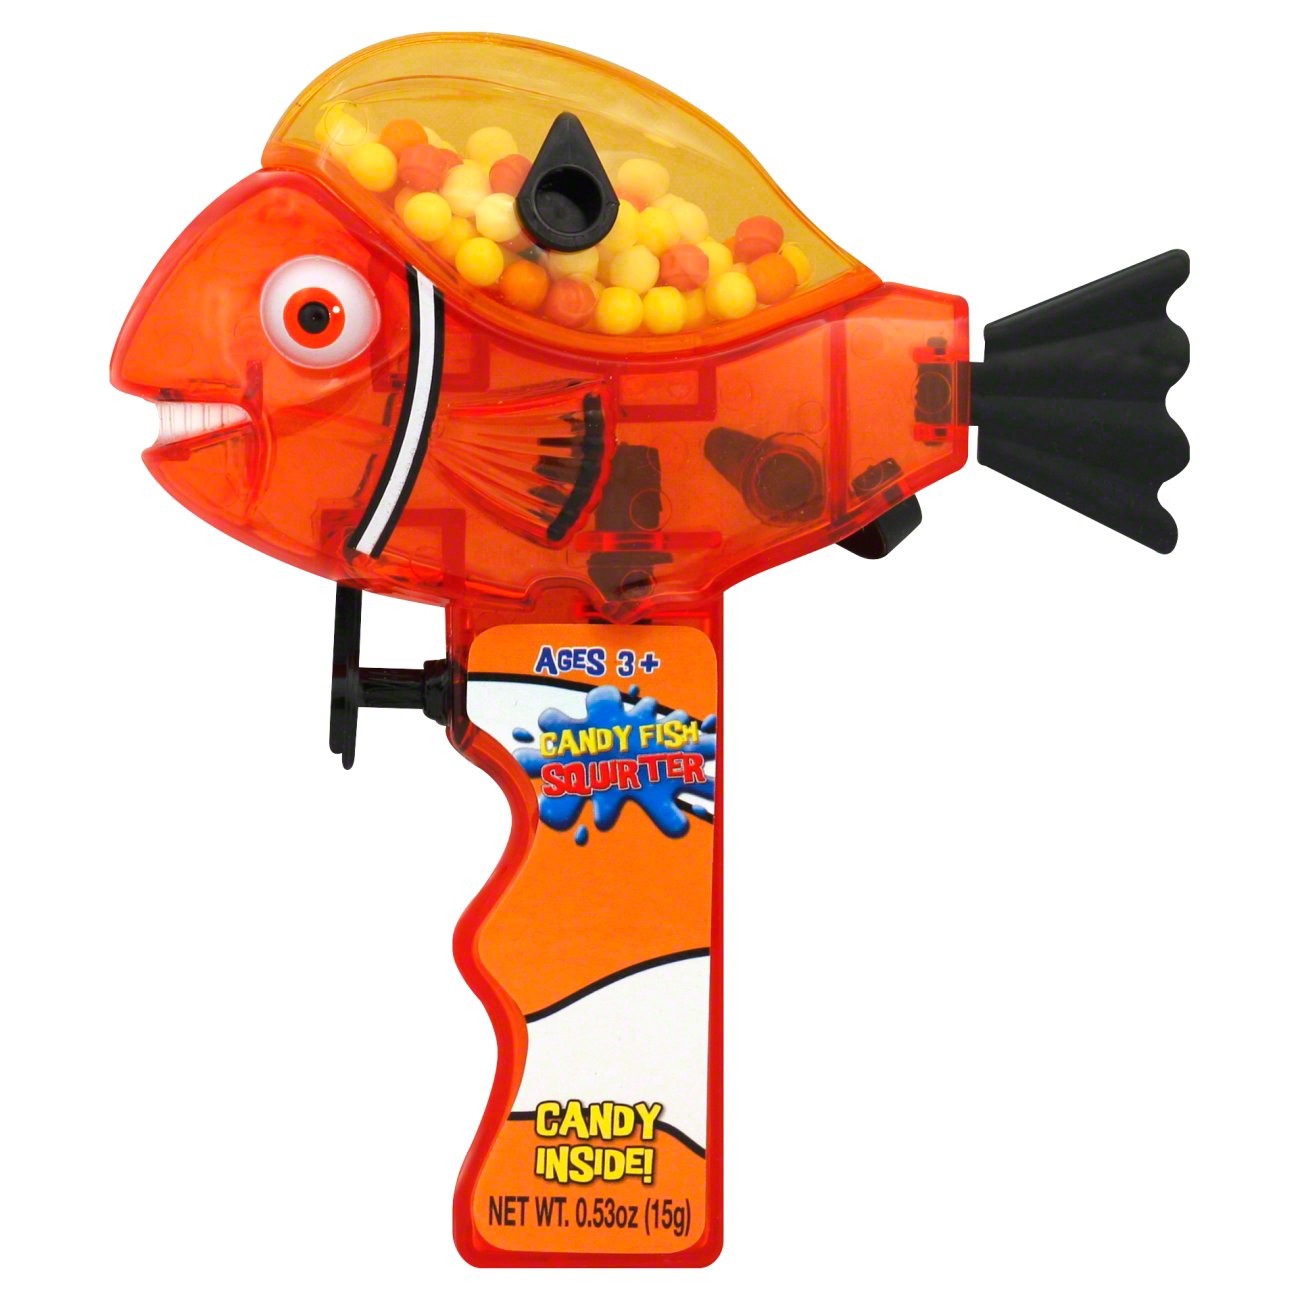 CandyRific Go Fish Squirt Fun Water Gun with Candy - Shop at H-E-B